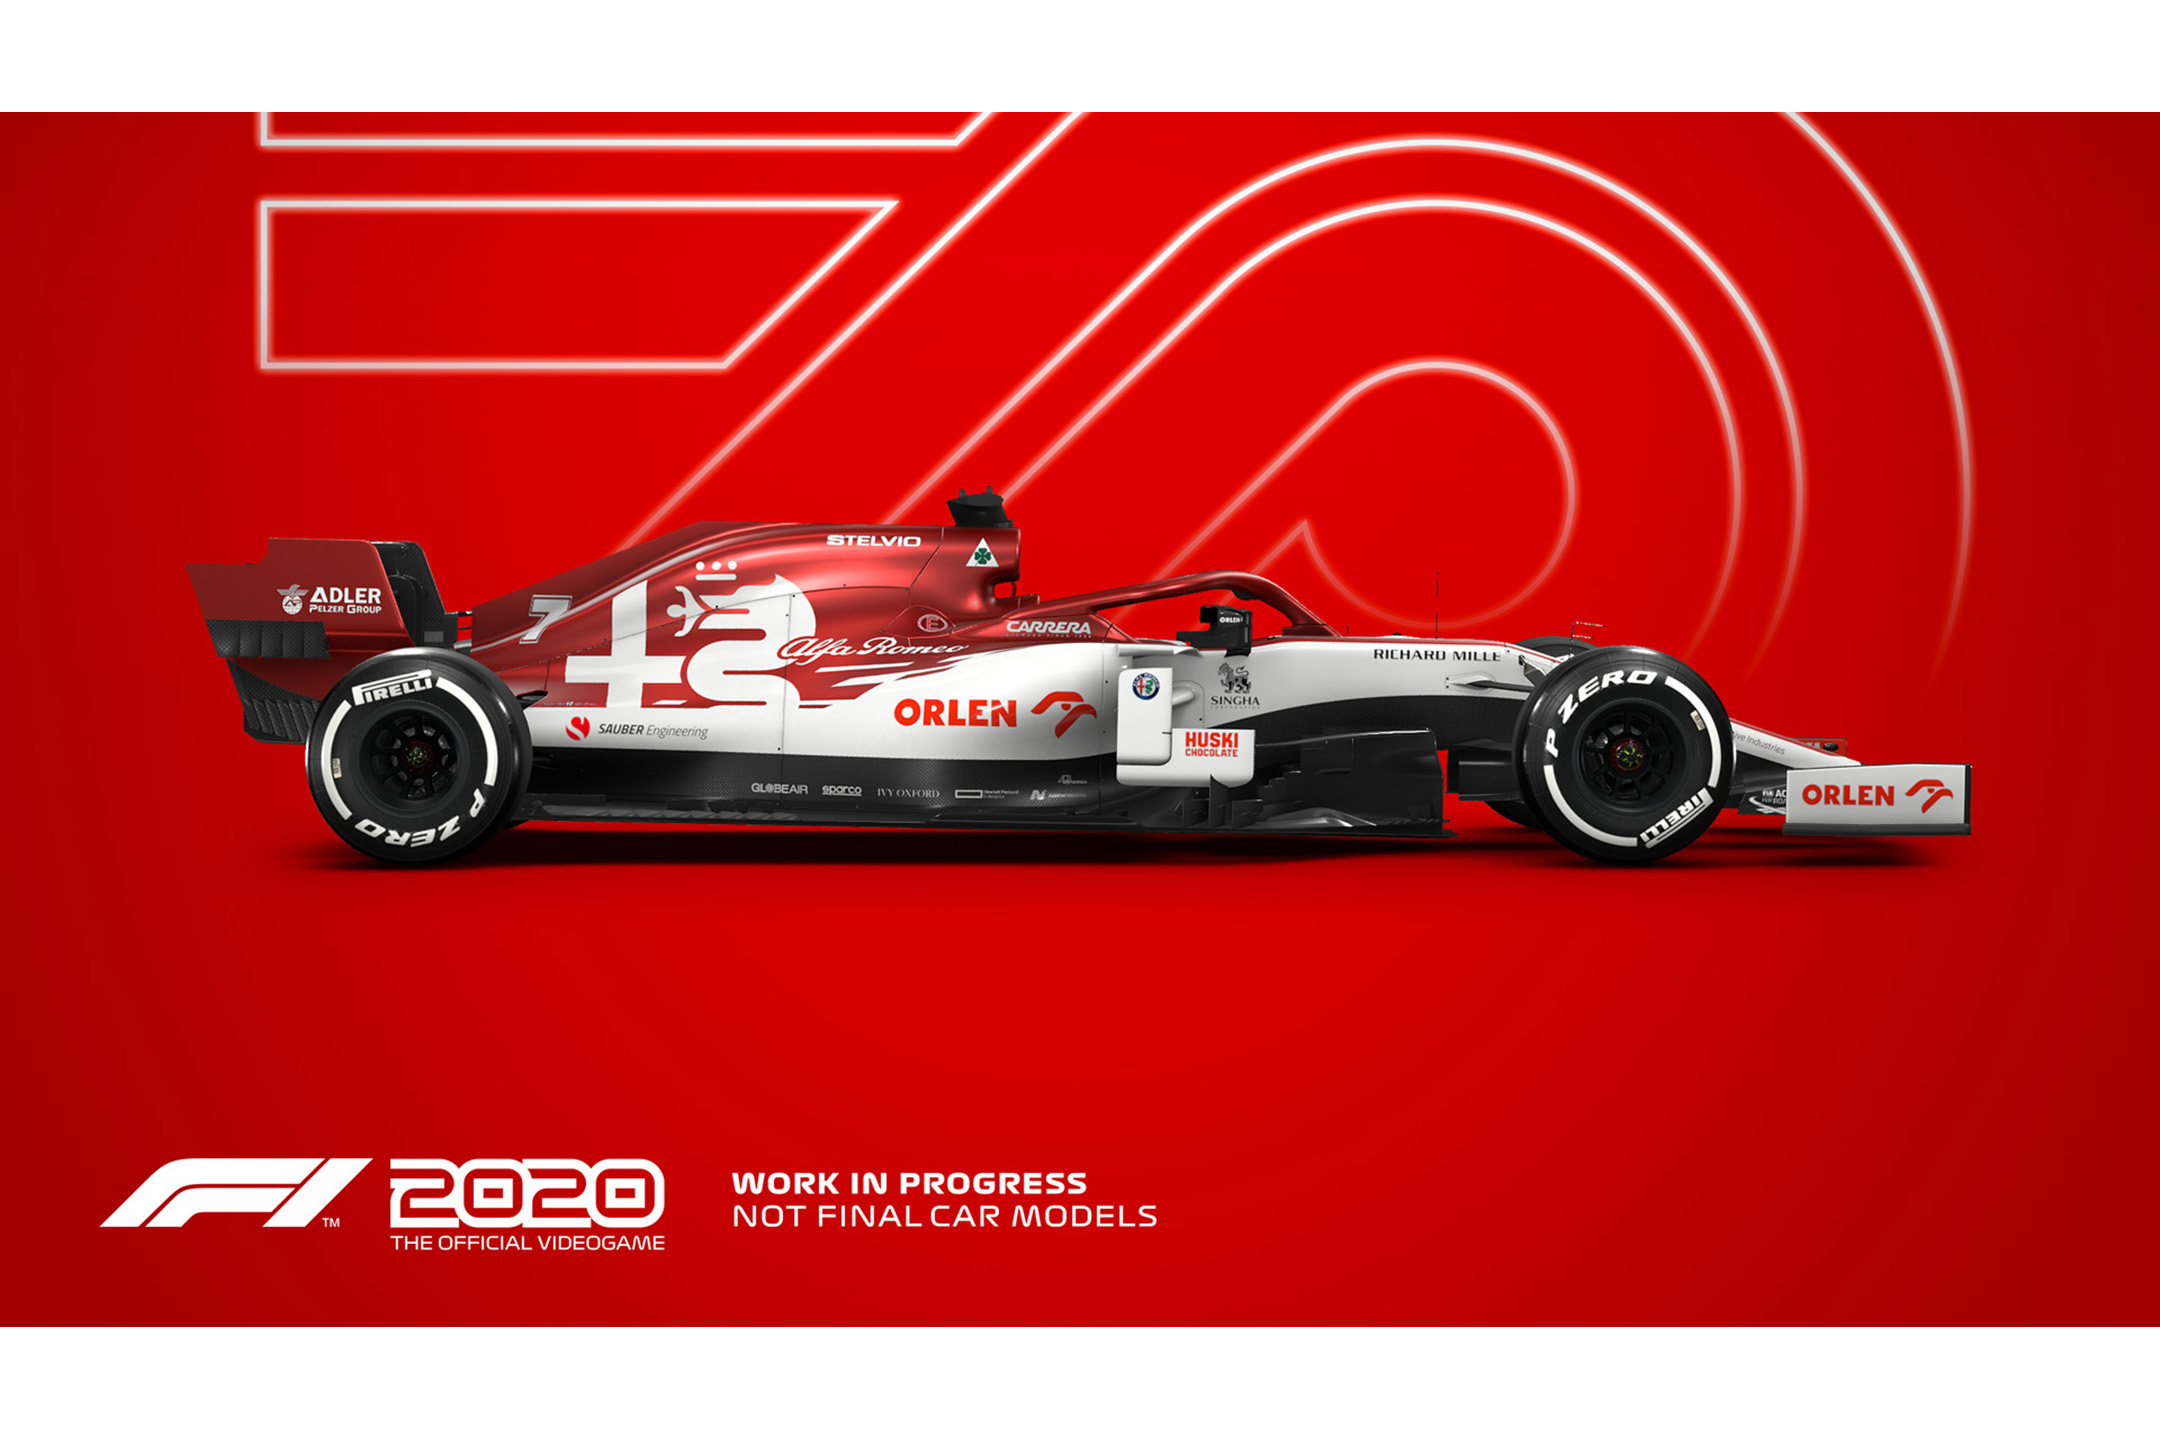 Gse Game Source Entertainment 家庭用ゲーム 発売元 F1 で11番目のチームとなり レースに赴こう F1 70周年を記念し 新サーキット スプリットスクリーンレーシング機能を追加 F1 Deluxe Schumacher Editionも発売決定